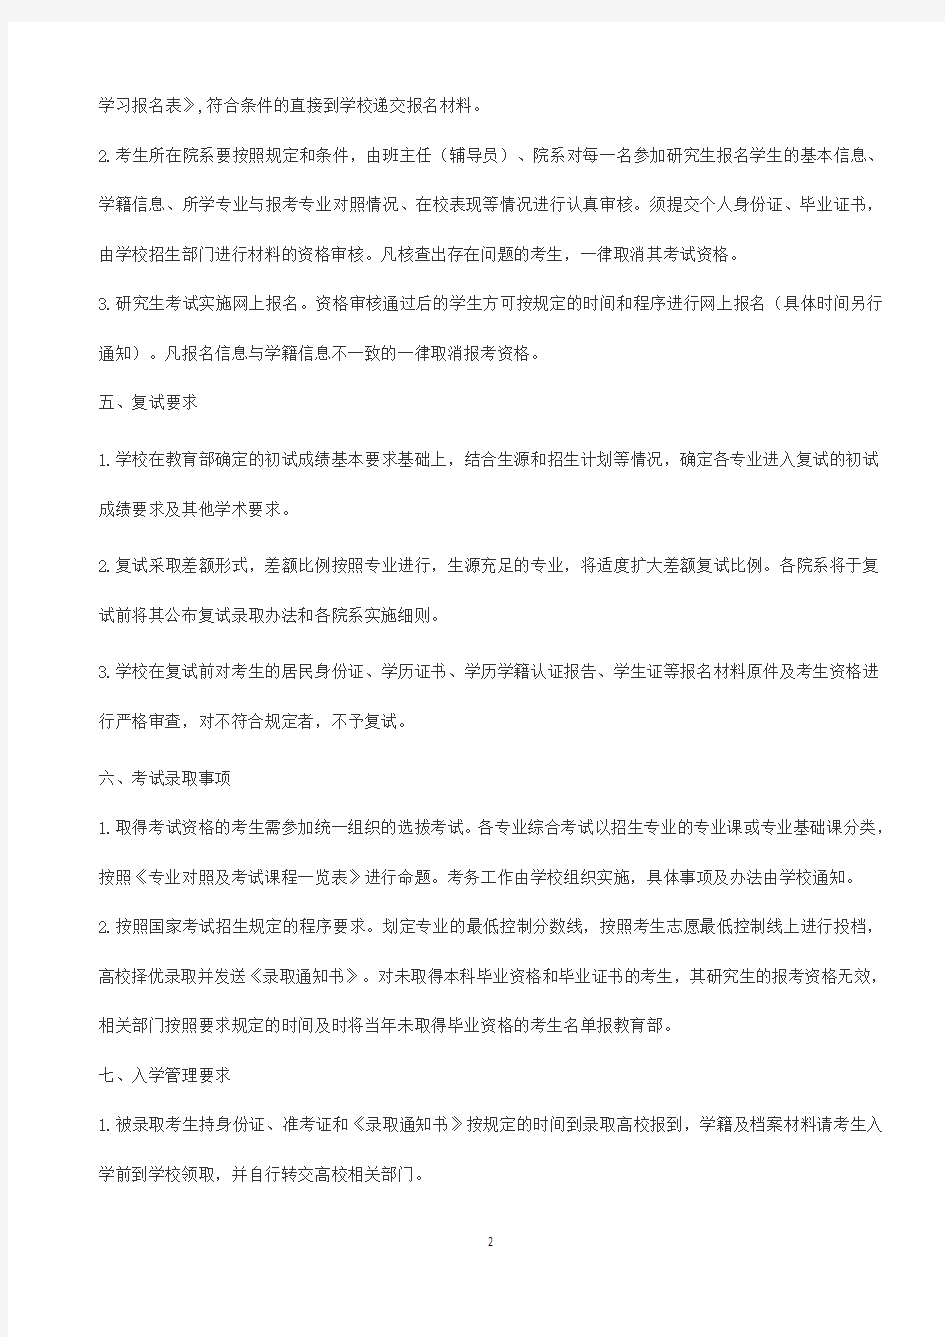 2020年中国人民大学考研招生简章